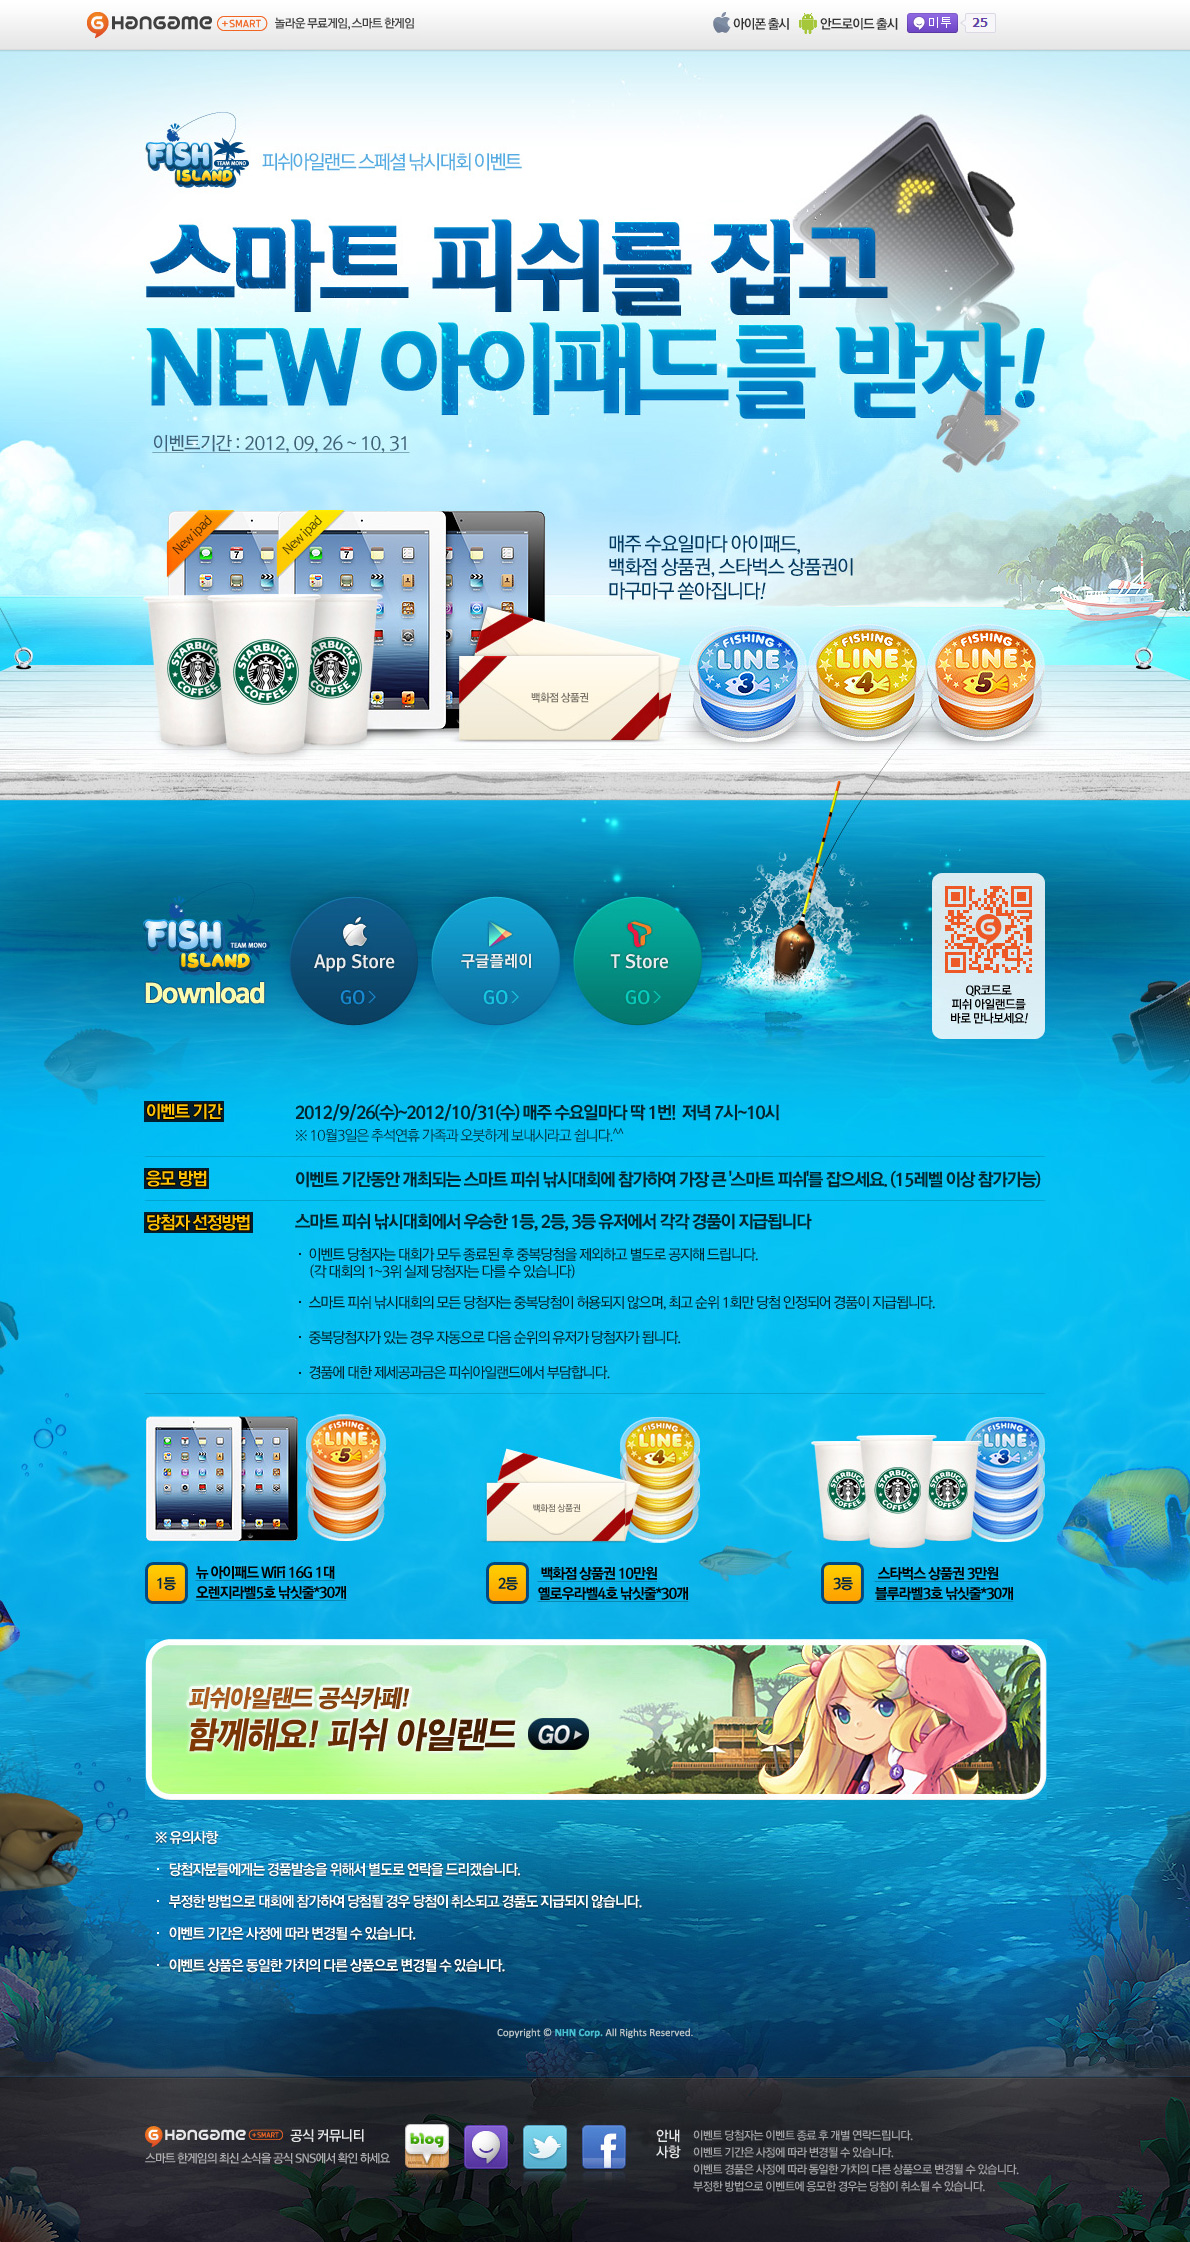 鱼岛游戏活动专题页面设计